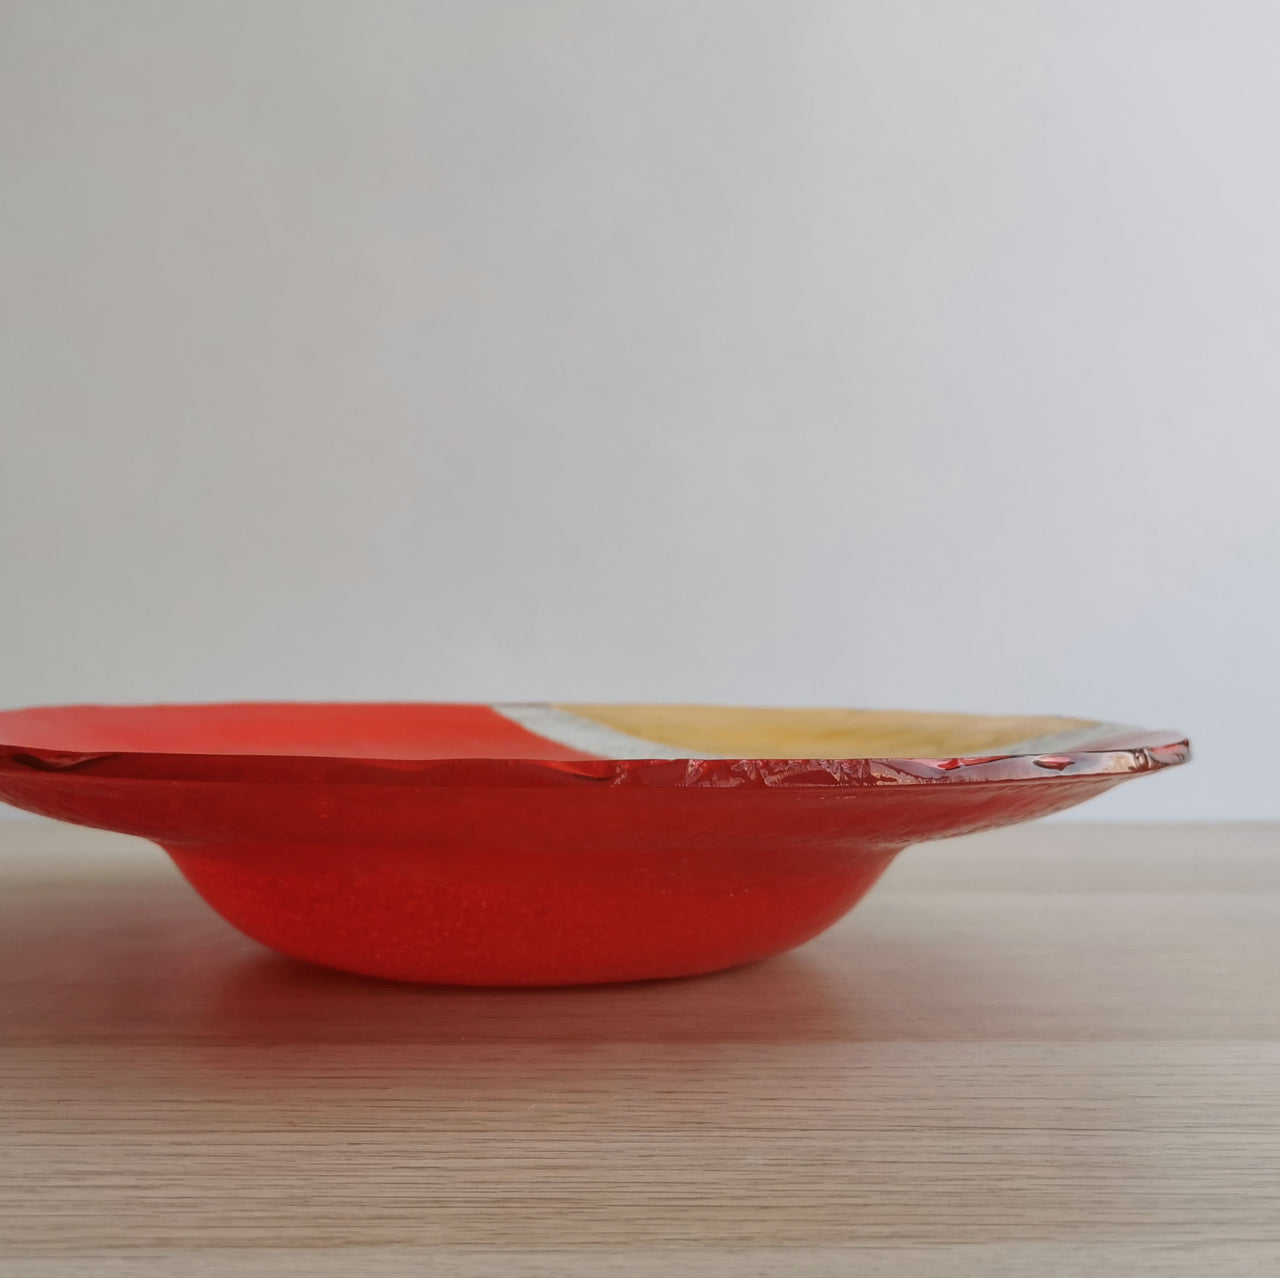 Pasta Minimalist Poppy&Gold Glass Bowl. Poppy&Gold Glass Pasta Bowl - 11 7/16" (29cm.)